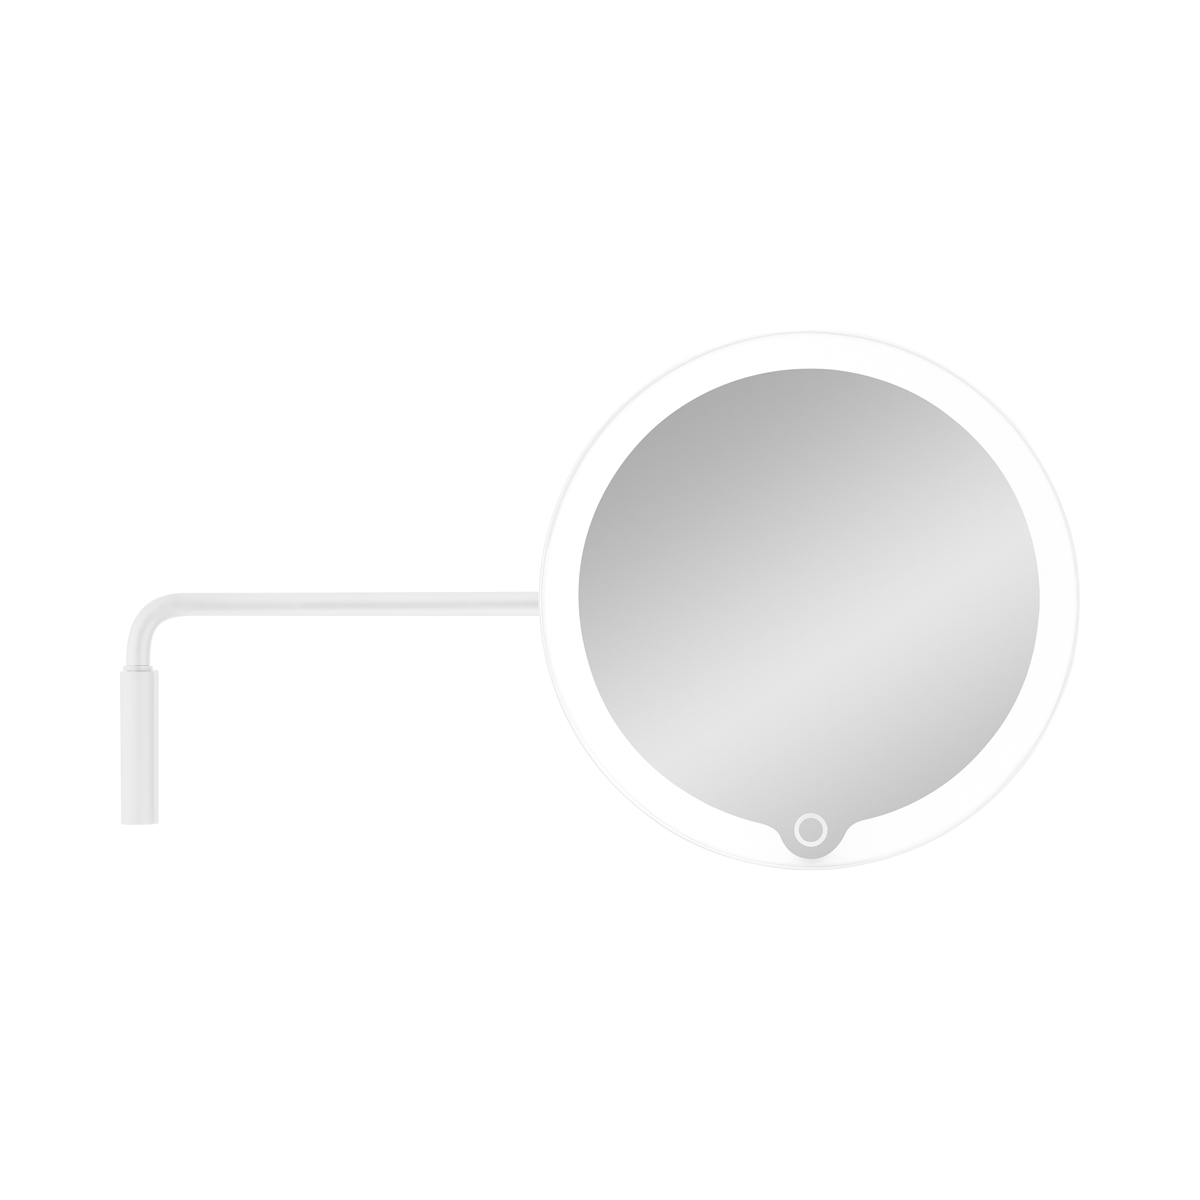 LED Kosmetikspiegel -MODO- White mit Wandhalterung. Material: Edelstahl Titanbeschichtet, Kunststoff. Von Blomus.